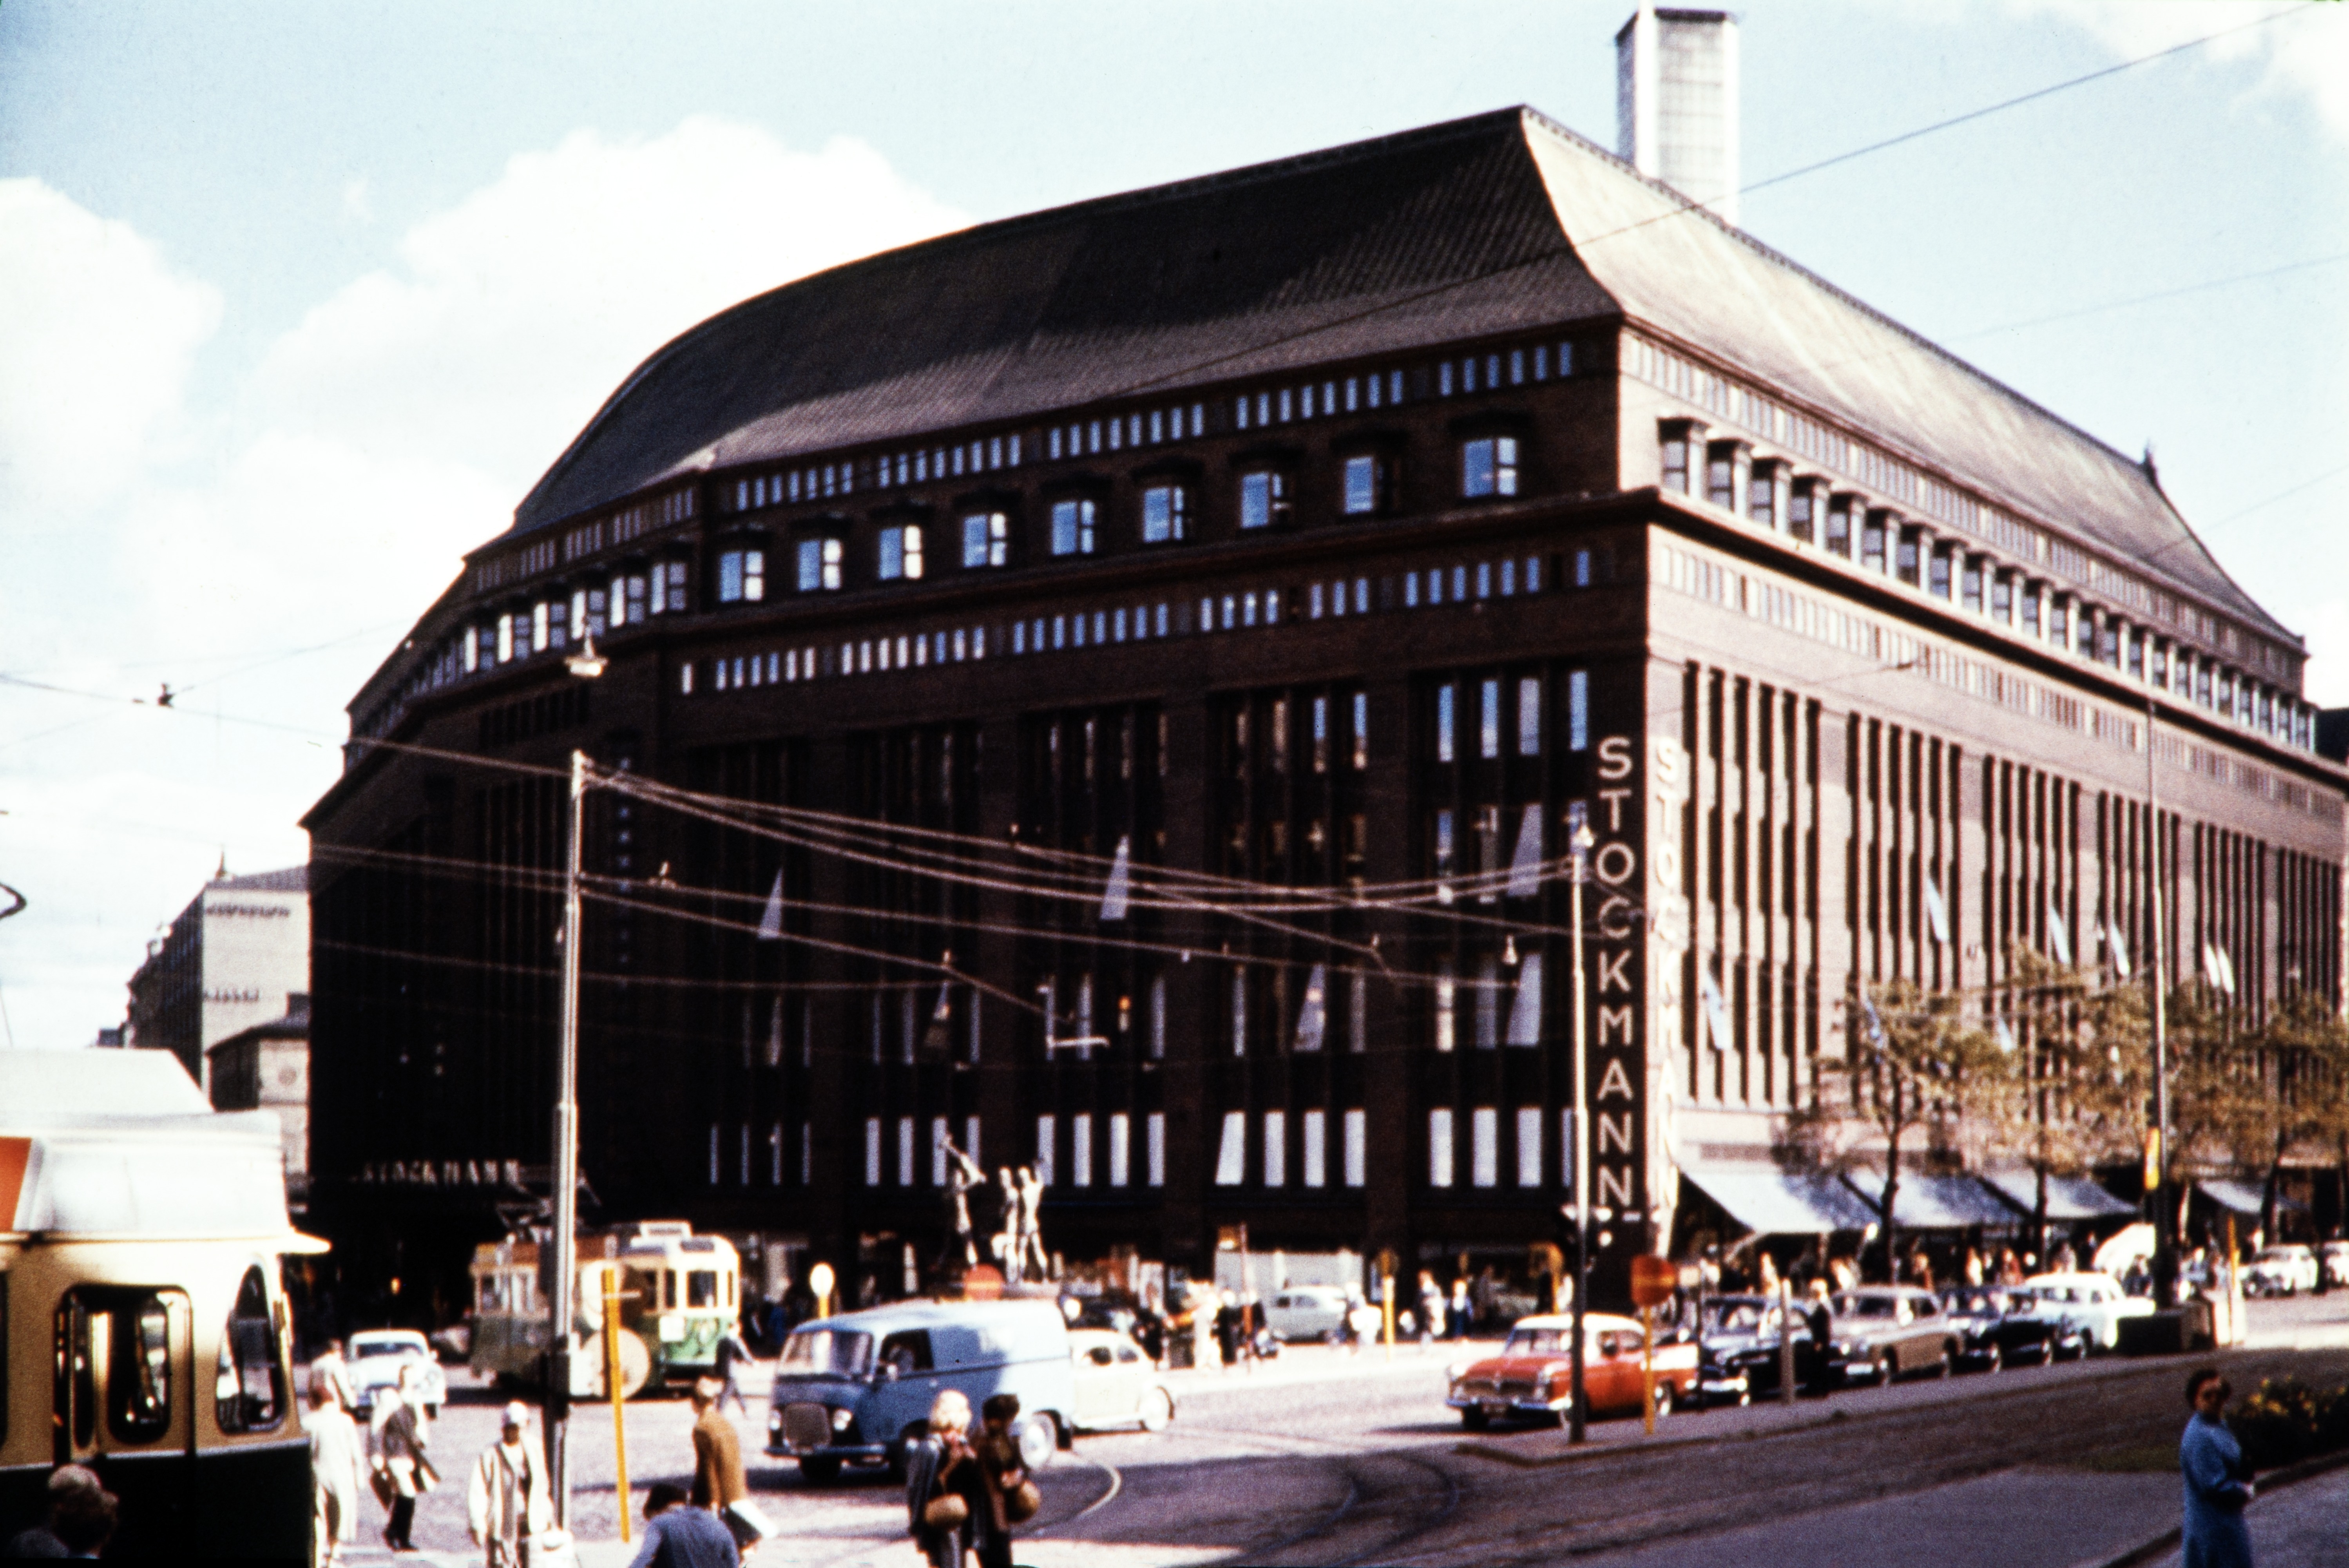 Stockmannin tavaratalo, Aleksanterinkatu 52. Näkymä Mannerheimintie 16:n kohdalta. Rakennus on toteutettu yleisessä suunnittelukilpailussa toisen palkinnon saaneen Sigurd Frosterusin ehdotuksen pohjalta. Rakentaminen aloitettiin basaarirakennuksella, ja varsinainen tavaratalo valmistui ensin 1920-luvun puolivälissä nelikerroksena. Lopulliseen kahdeksan maanpäällistä kerrosta käsittävään korkeuteen se valmistui 1930.